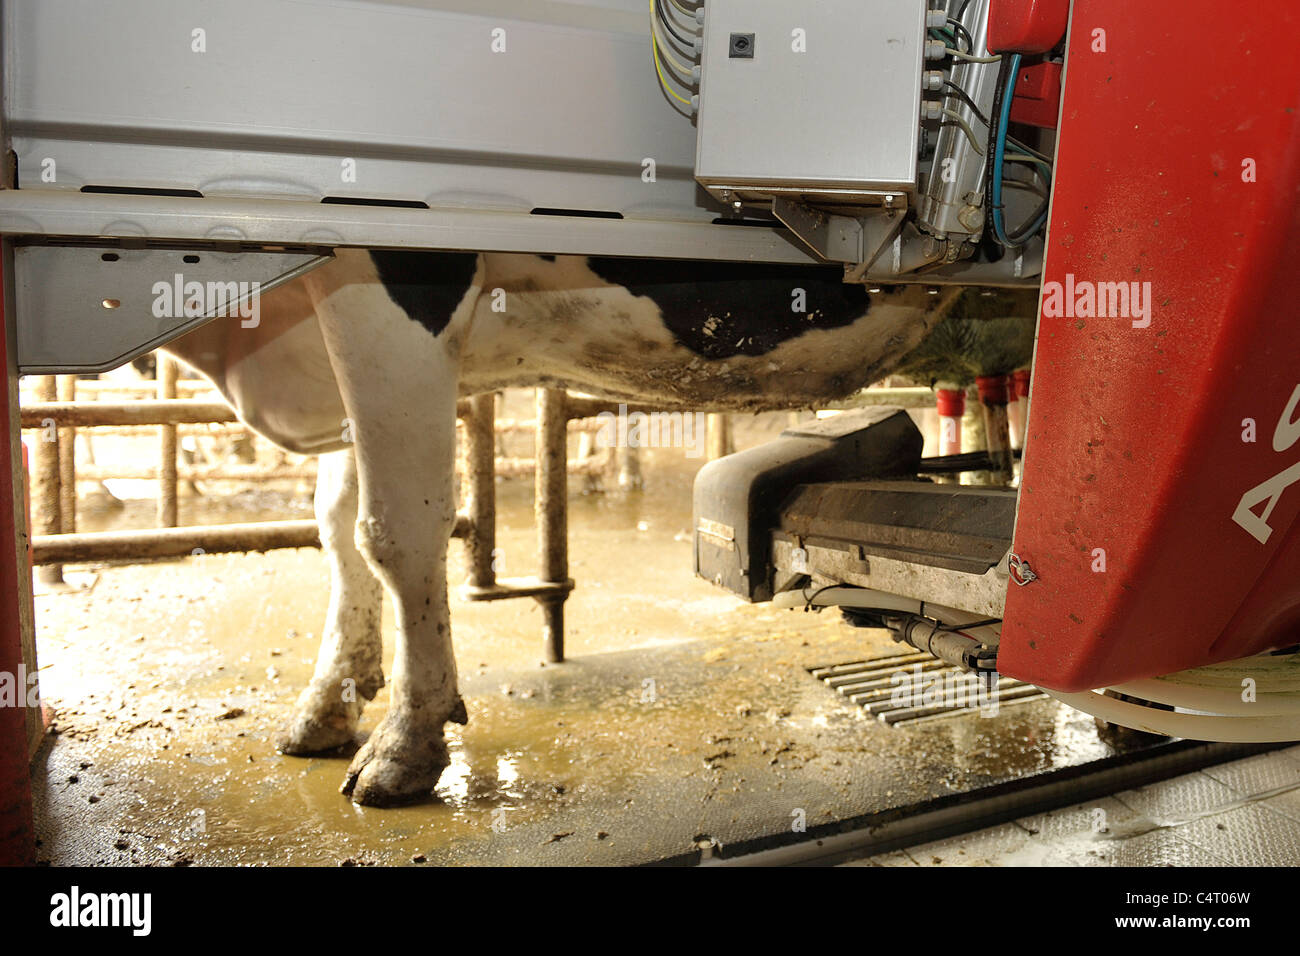 robot milking machine Stock Photo